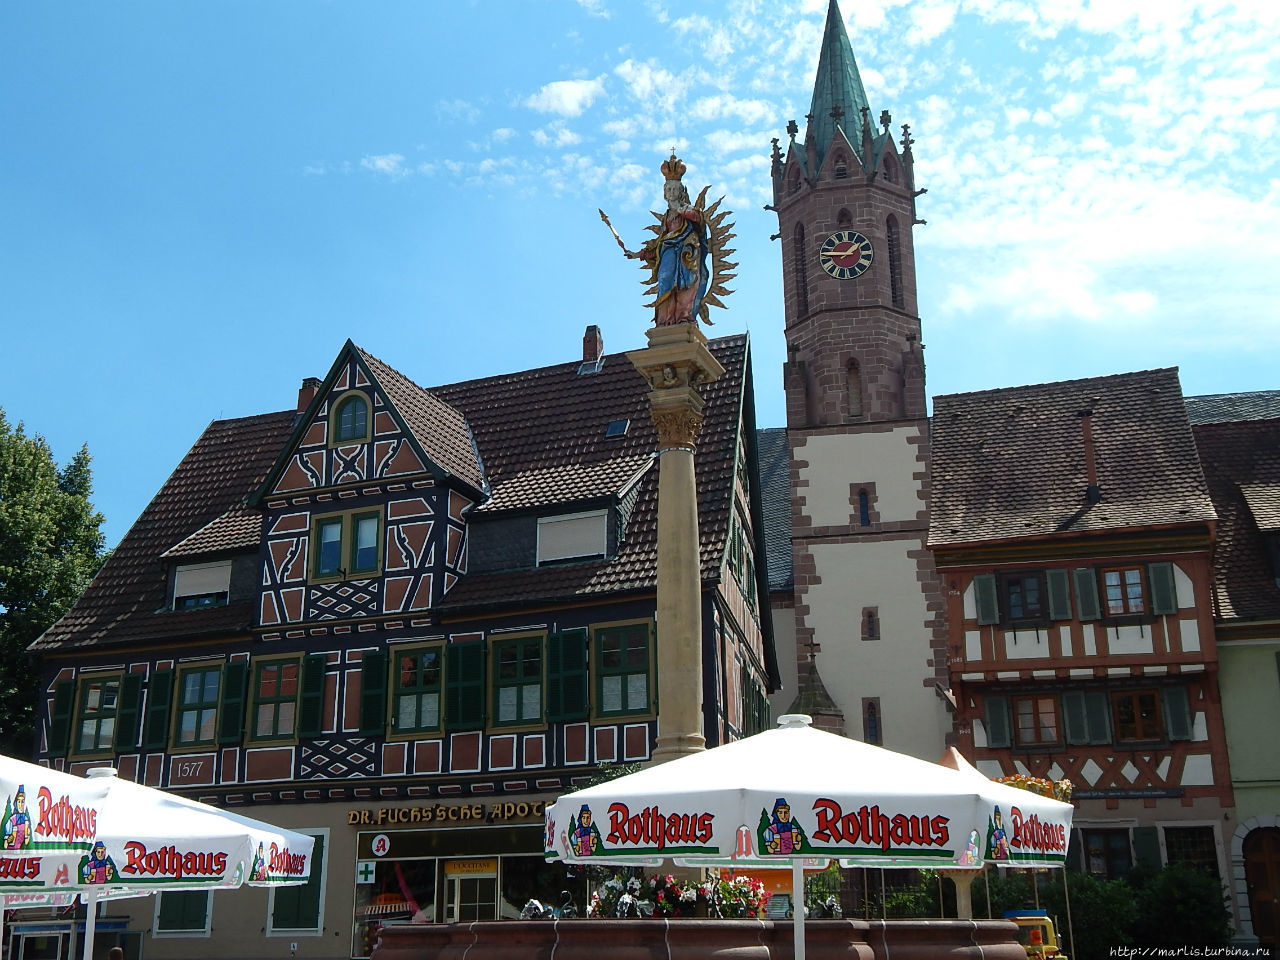 Рыночная площадь Марктплатц и колонна девы Марии Ладенбург, Германия